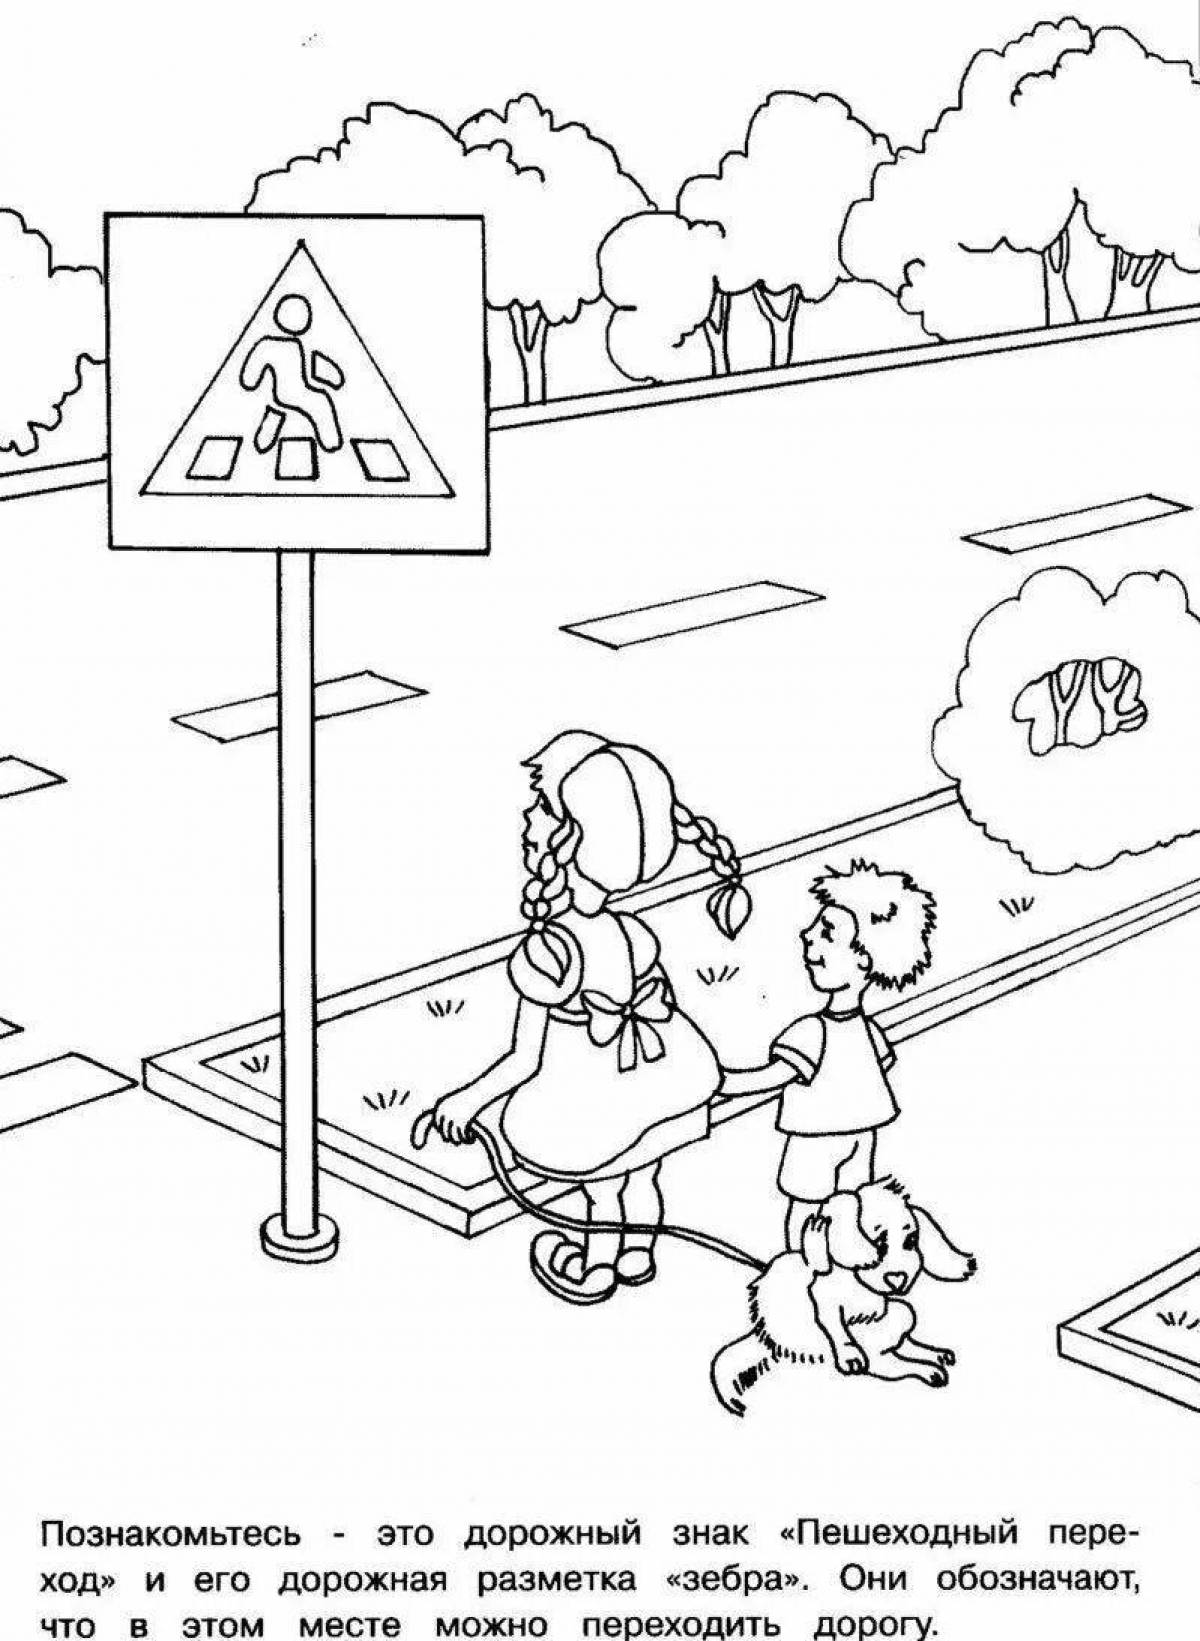 Увлекательная раскраска правила дорожного движения для детского сада